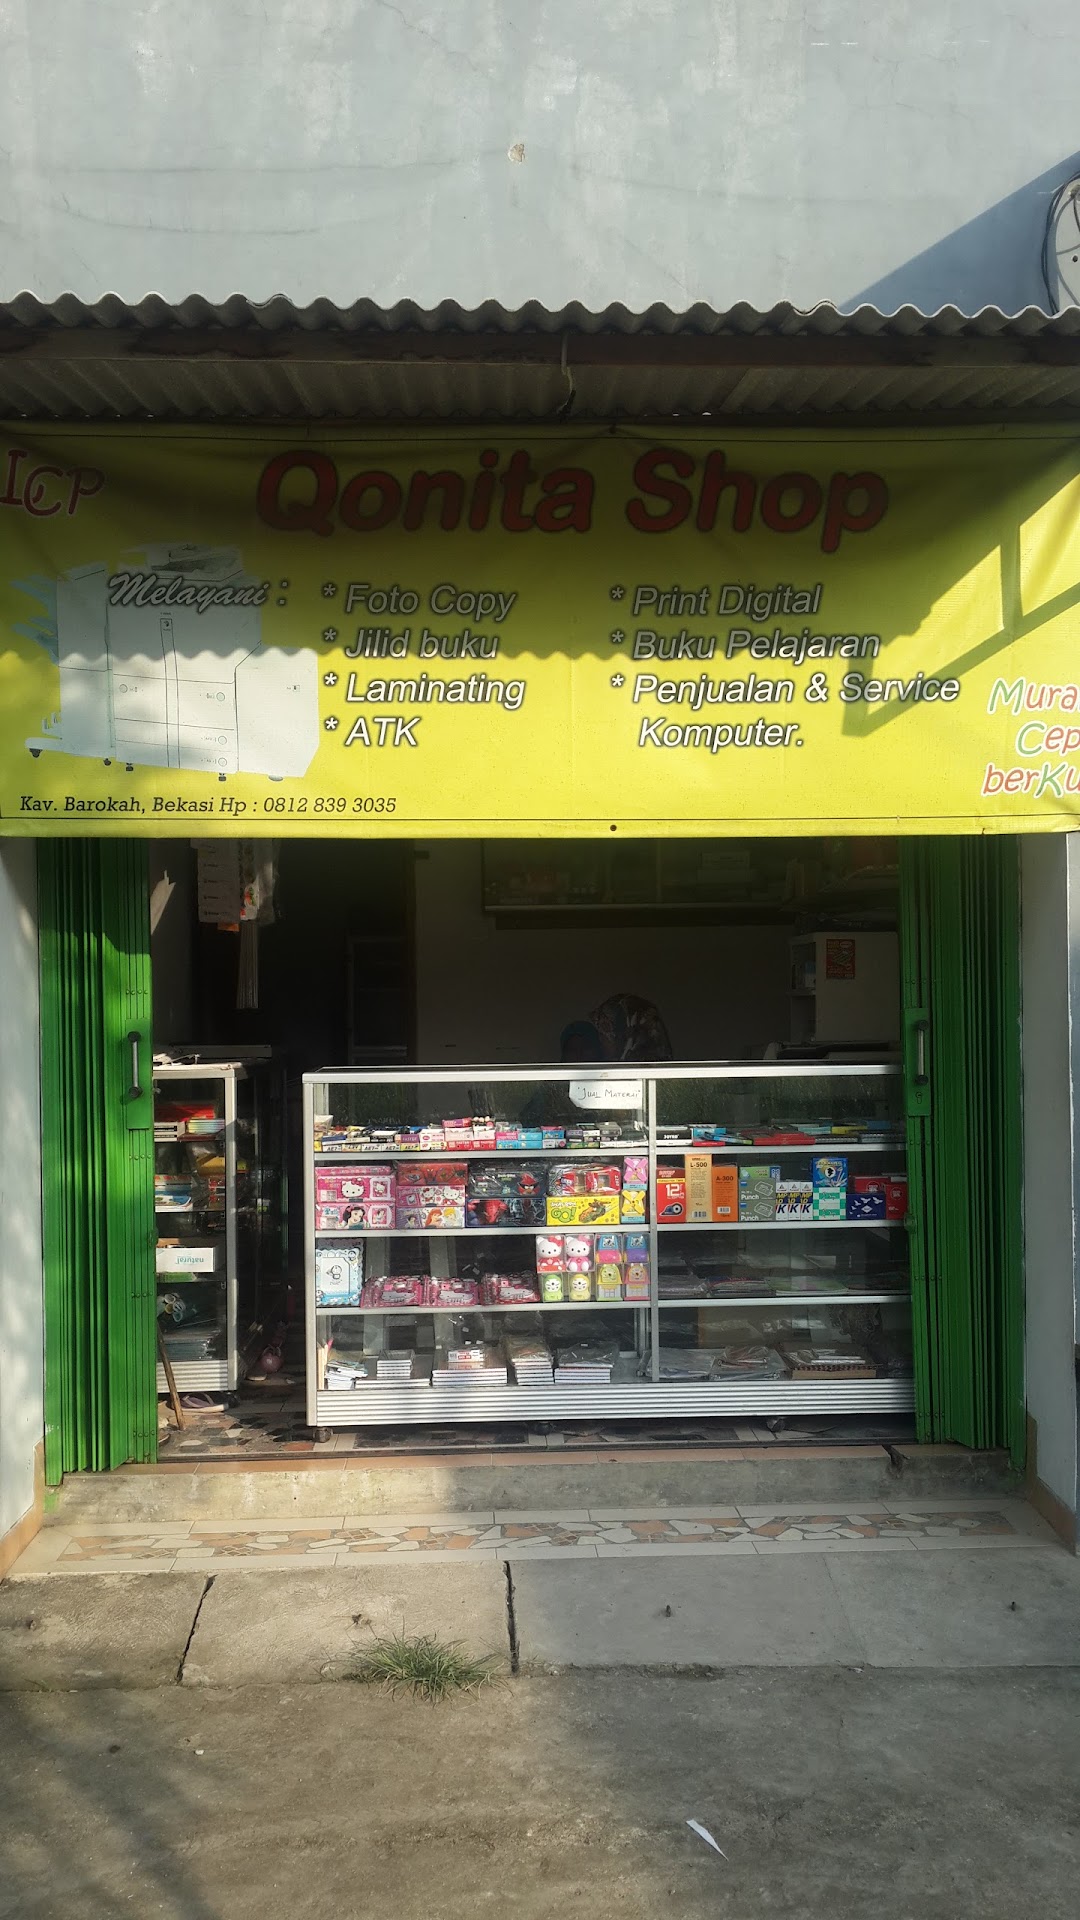 Qonita Shop